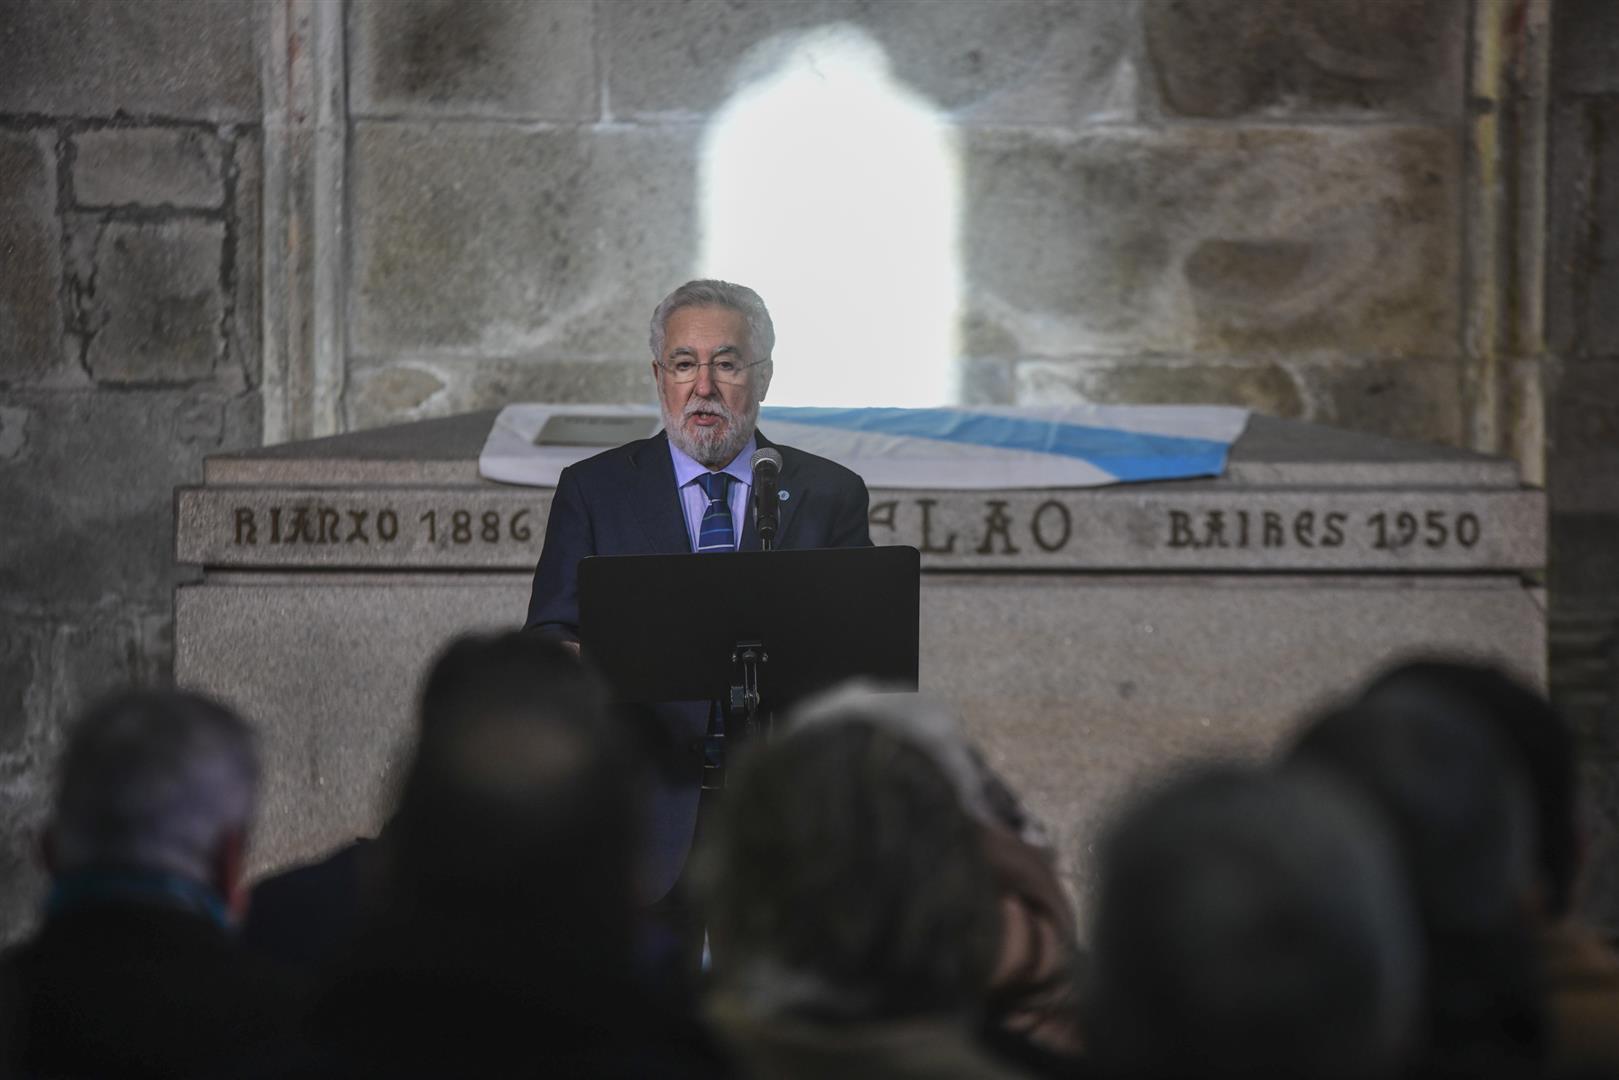 O Parlamento de Galicia organizará un acto de homenaxe a Castelao para recoñecer o seu papel como presidente do Consello de Galiza